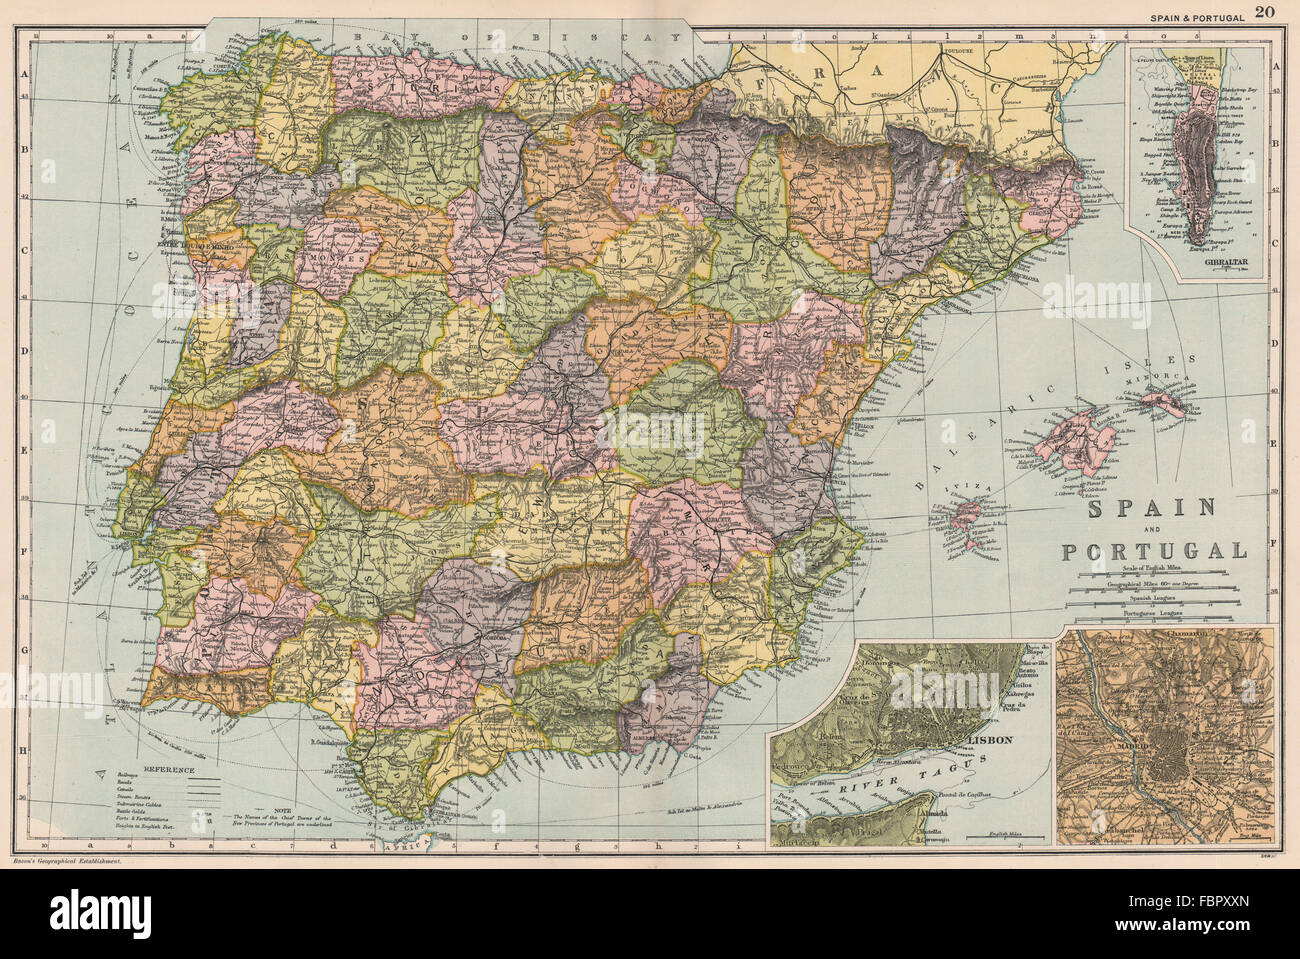 IBERIA-Spanien-Portugal. Schlachten/Termine. Gibraltar-Lissabon-Madrid. Speck, 1903 Karte Stockfoto